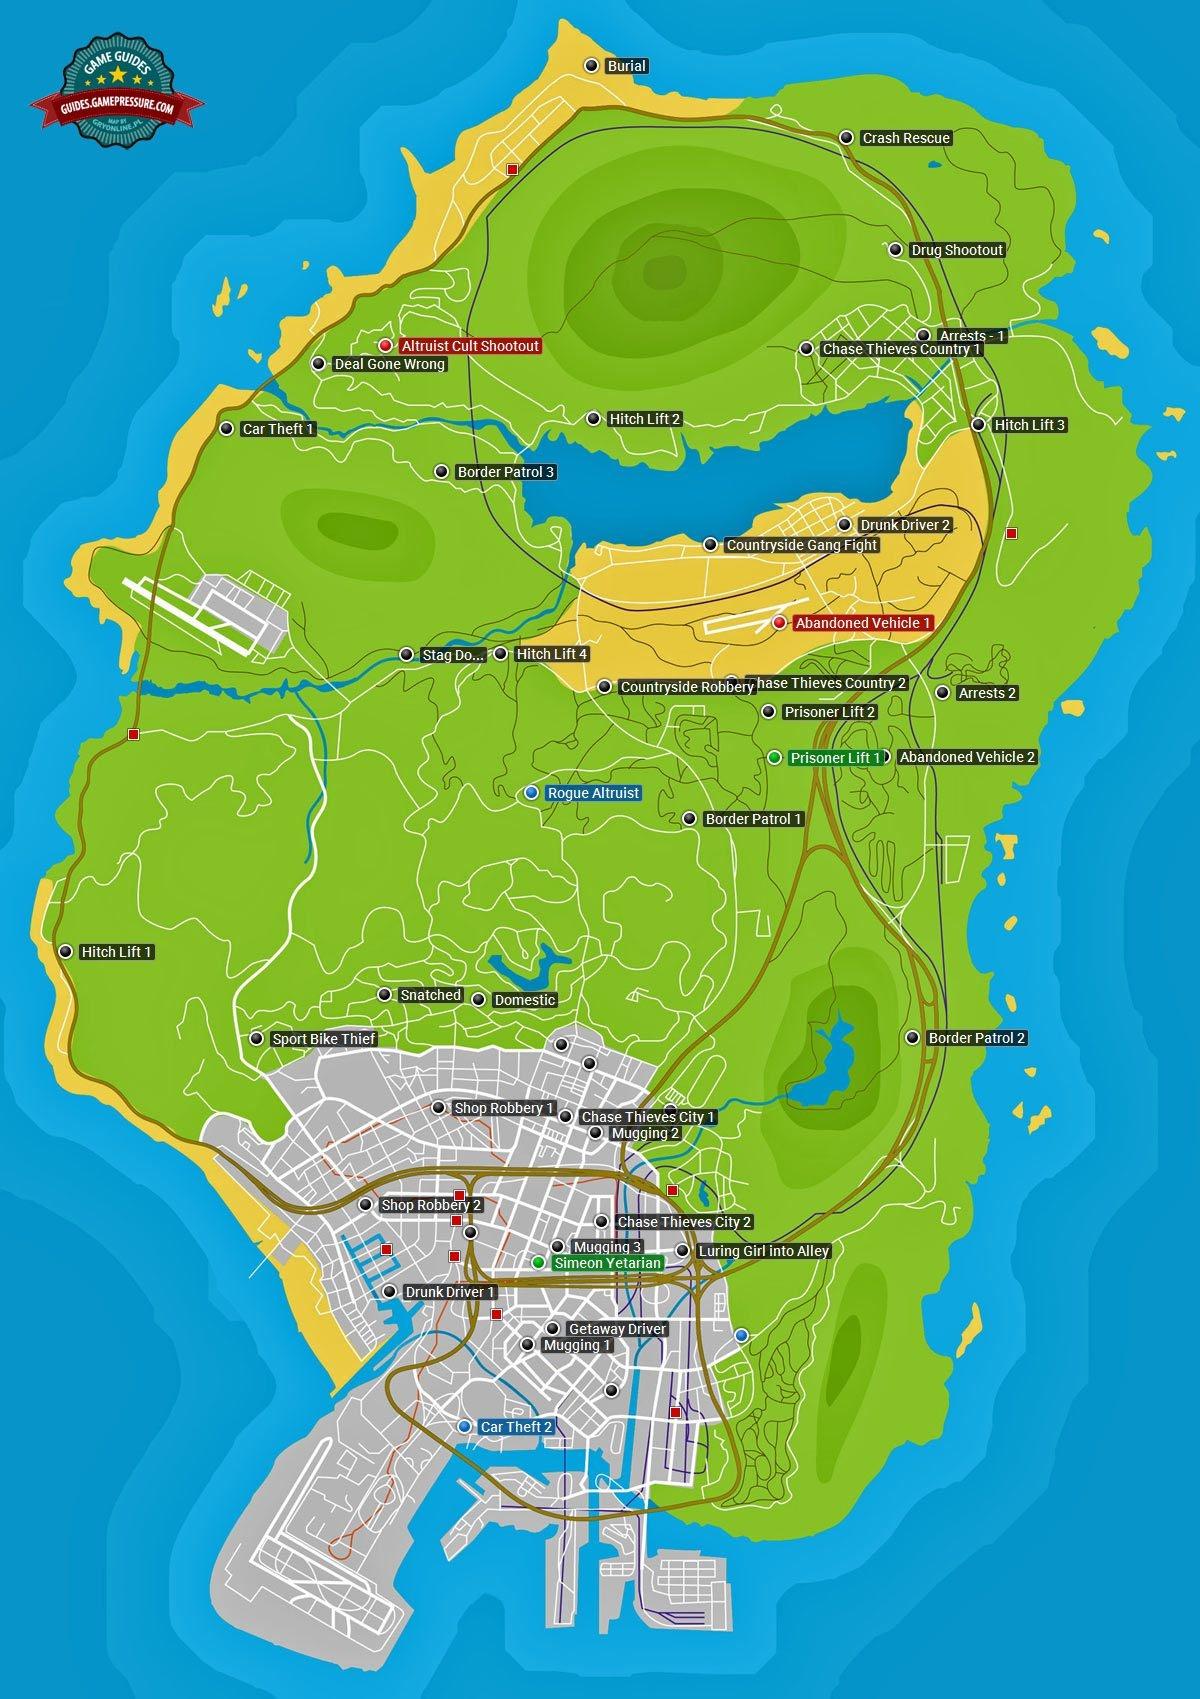 GTA 5 - LOS SANTOS MAP ANALYSIS 